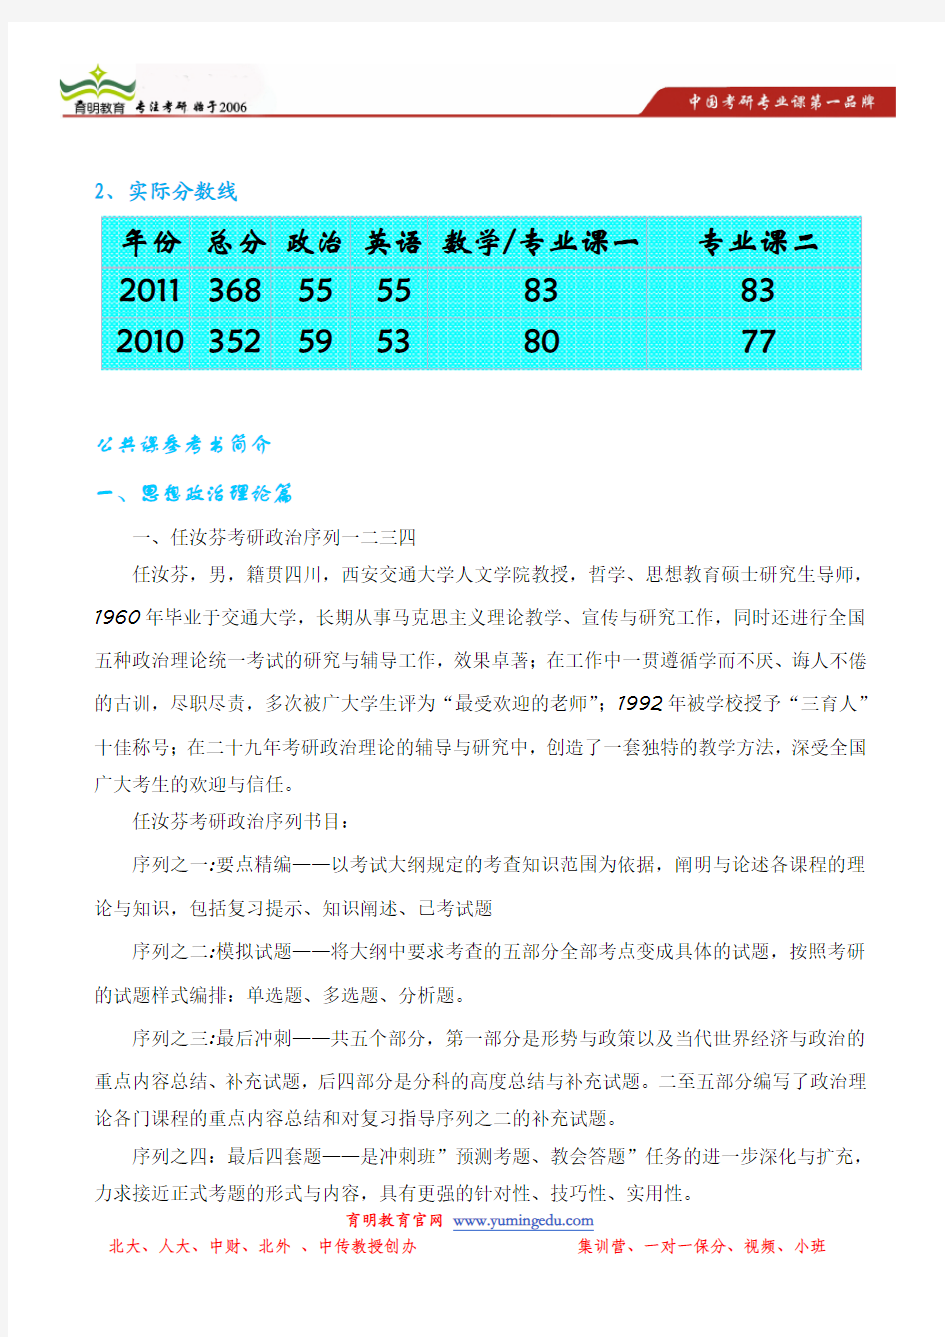 北京北京理工大学管理与经济学院管理科学与工程考研历年报录比